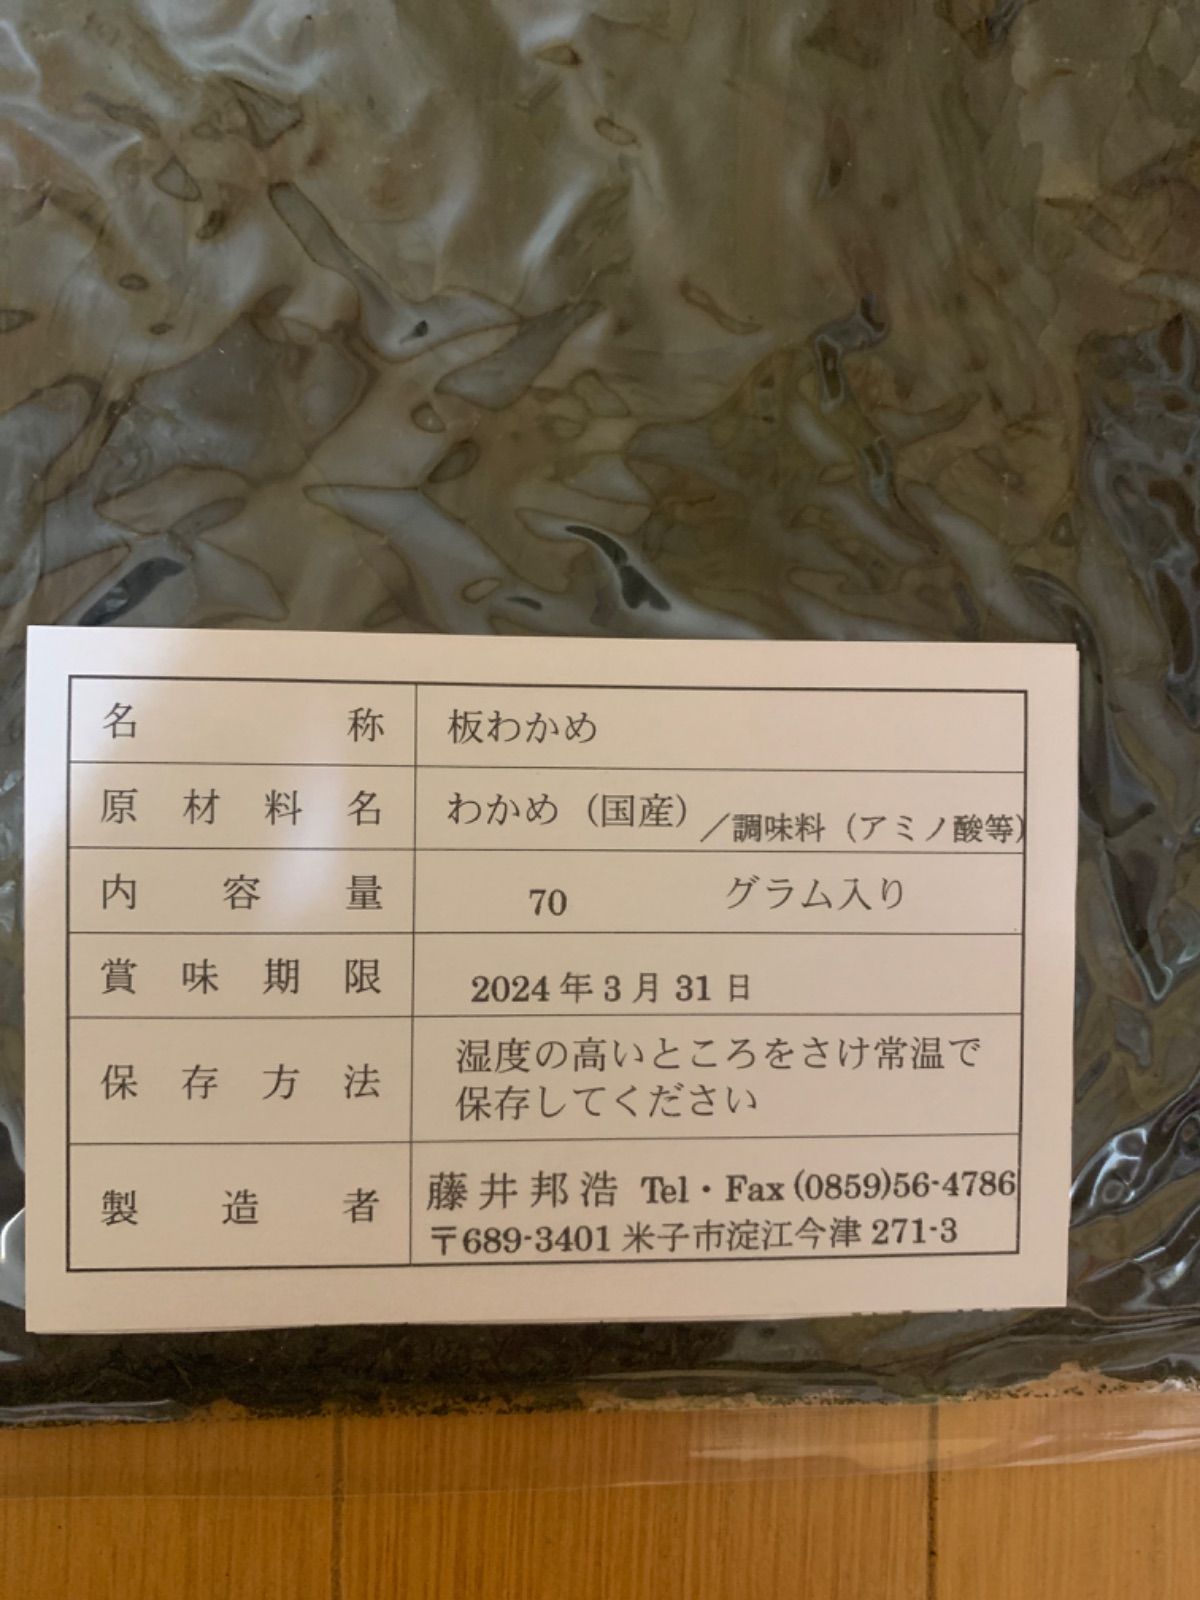 鳥取県 天然板わかめ 大袋70グラム 2袋-3